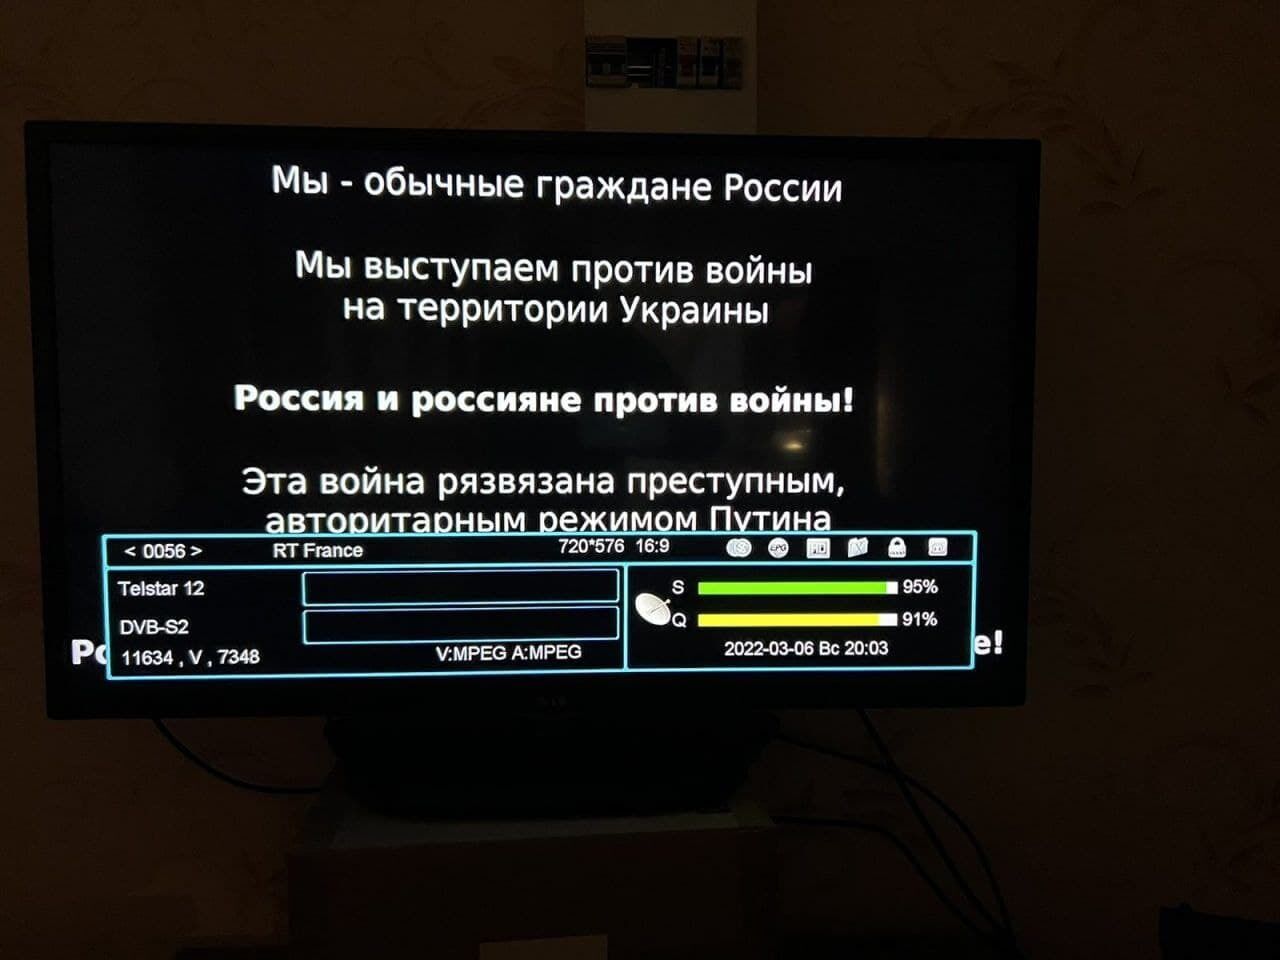 "Ця війна розв'язана злочинним режимом": на відеосервісах у РФ почали транслювати антивоєнну агітацію. Фото і відео